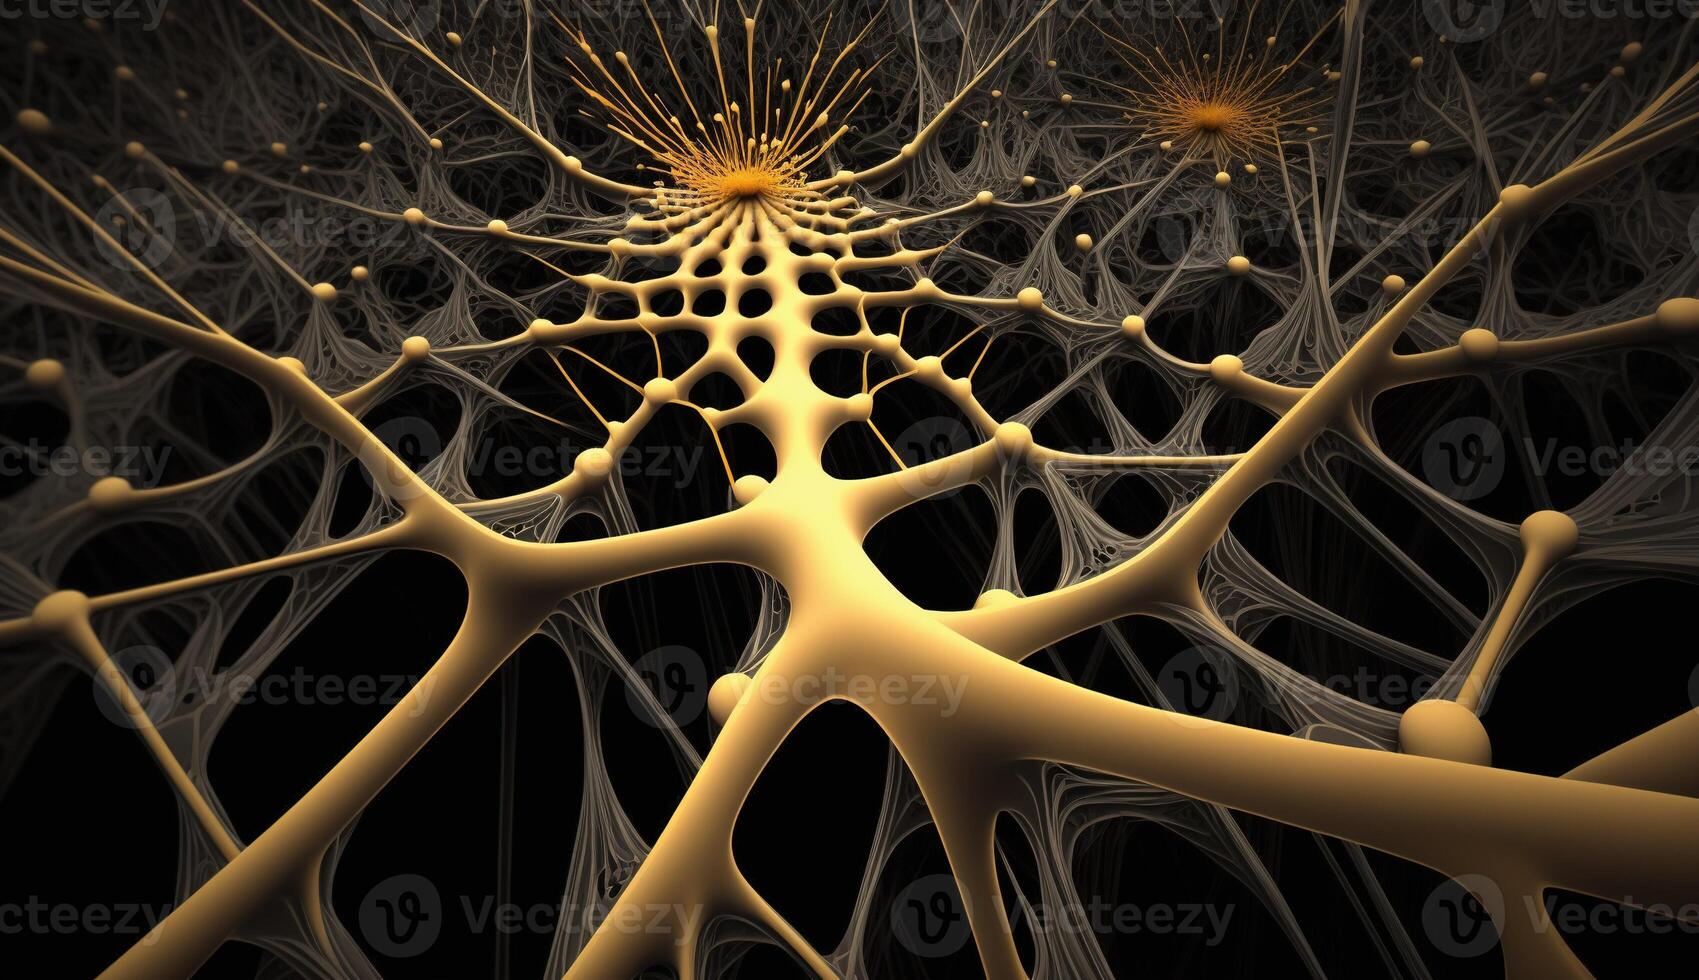 generativ ai, konceptuell illustration av nervcell celler med lysande länk knop i abstrakt mörk Plats, hög upplösning. mänsklig nervös systemet, neuralt nätverk foto